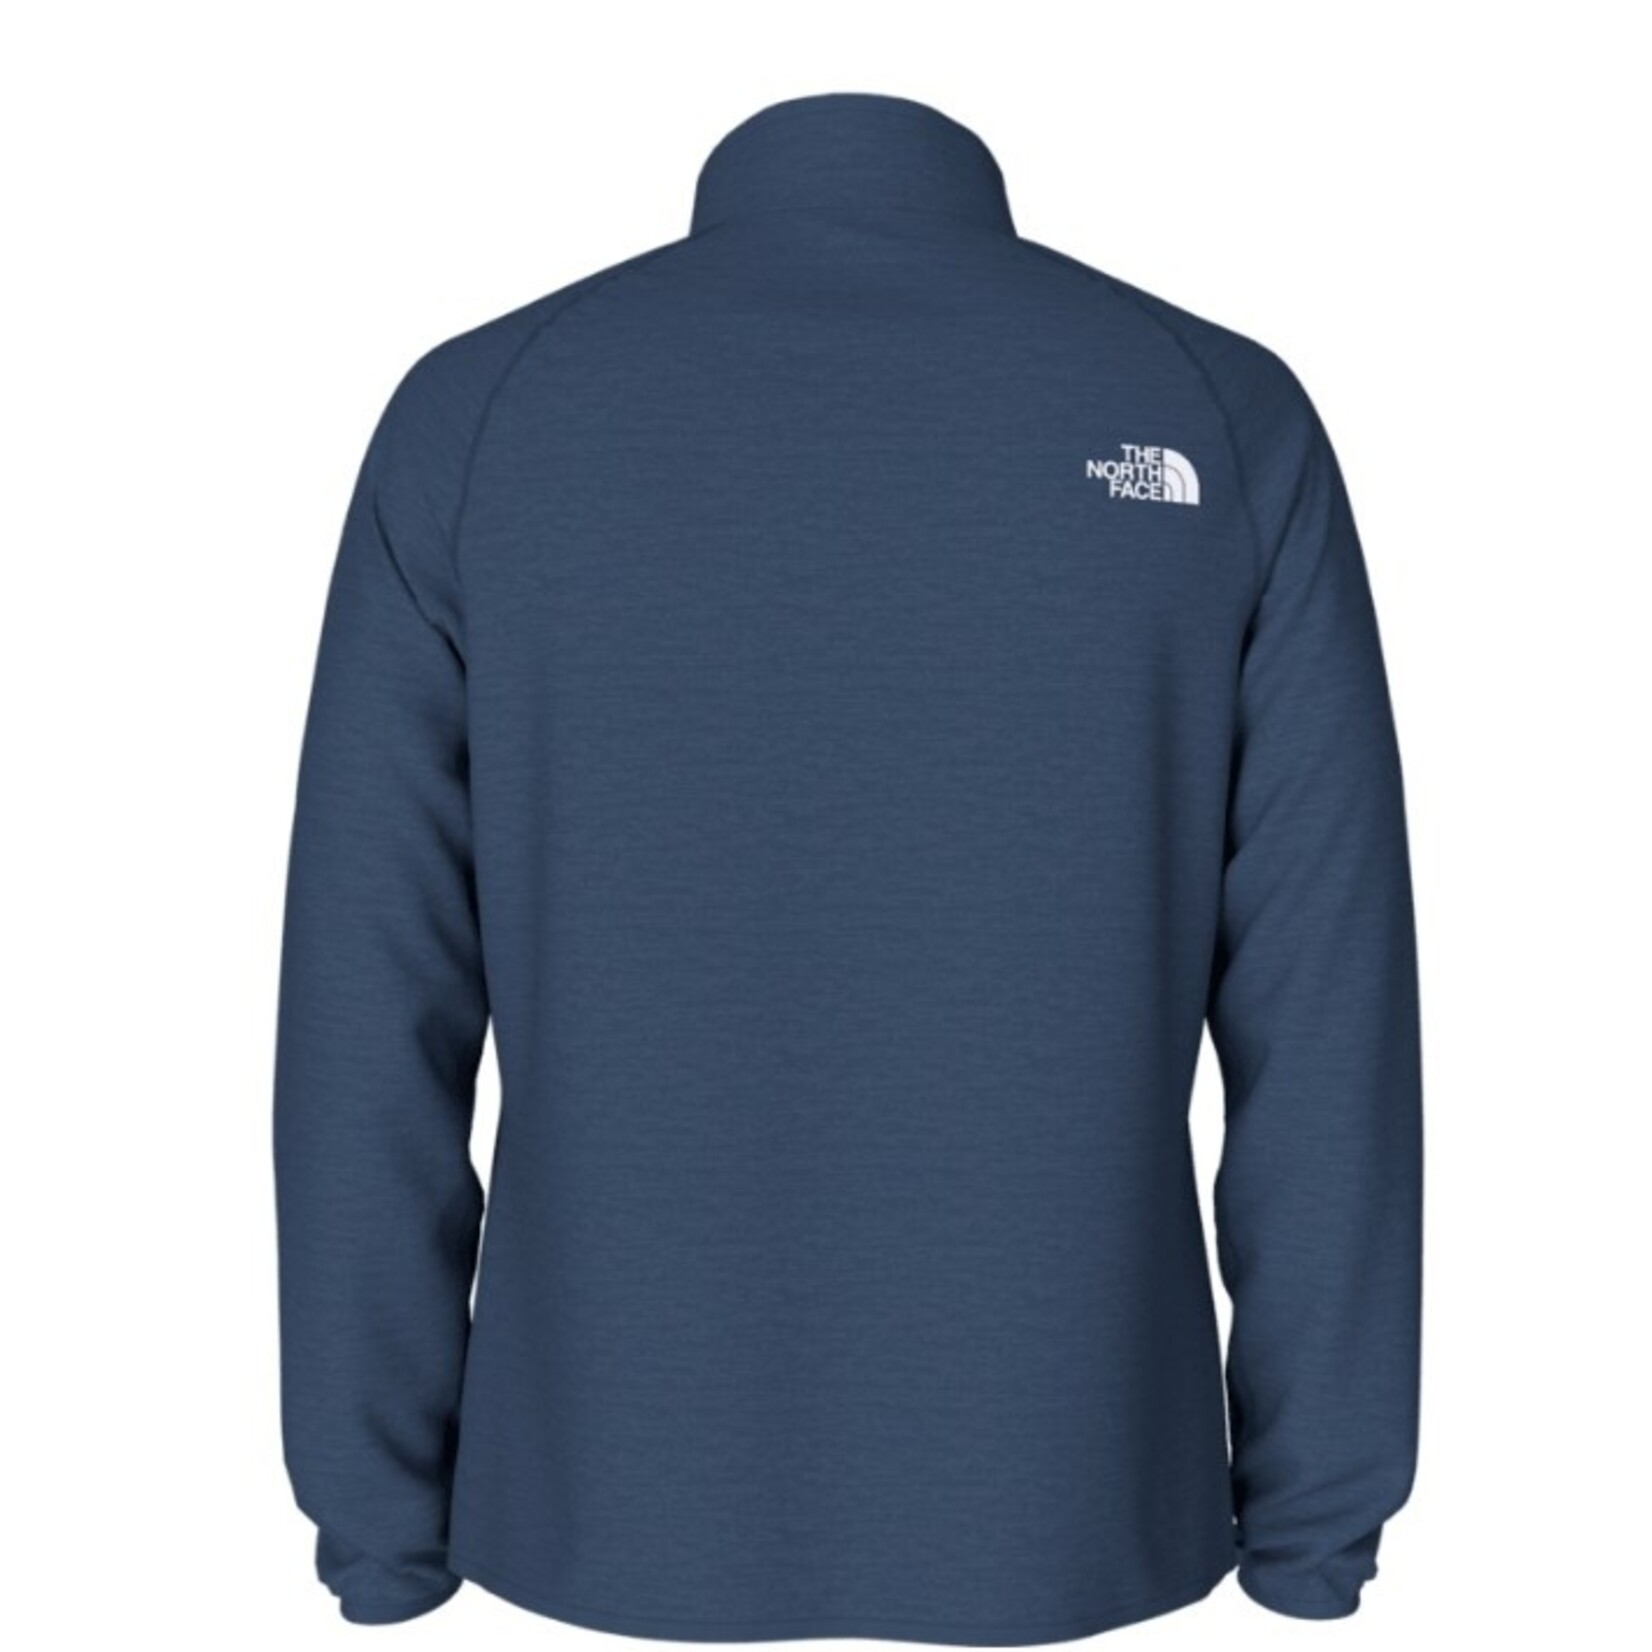 The North Face Canyonlands Full Zip Fleece Sweatshirt - Men's